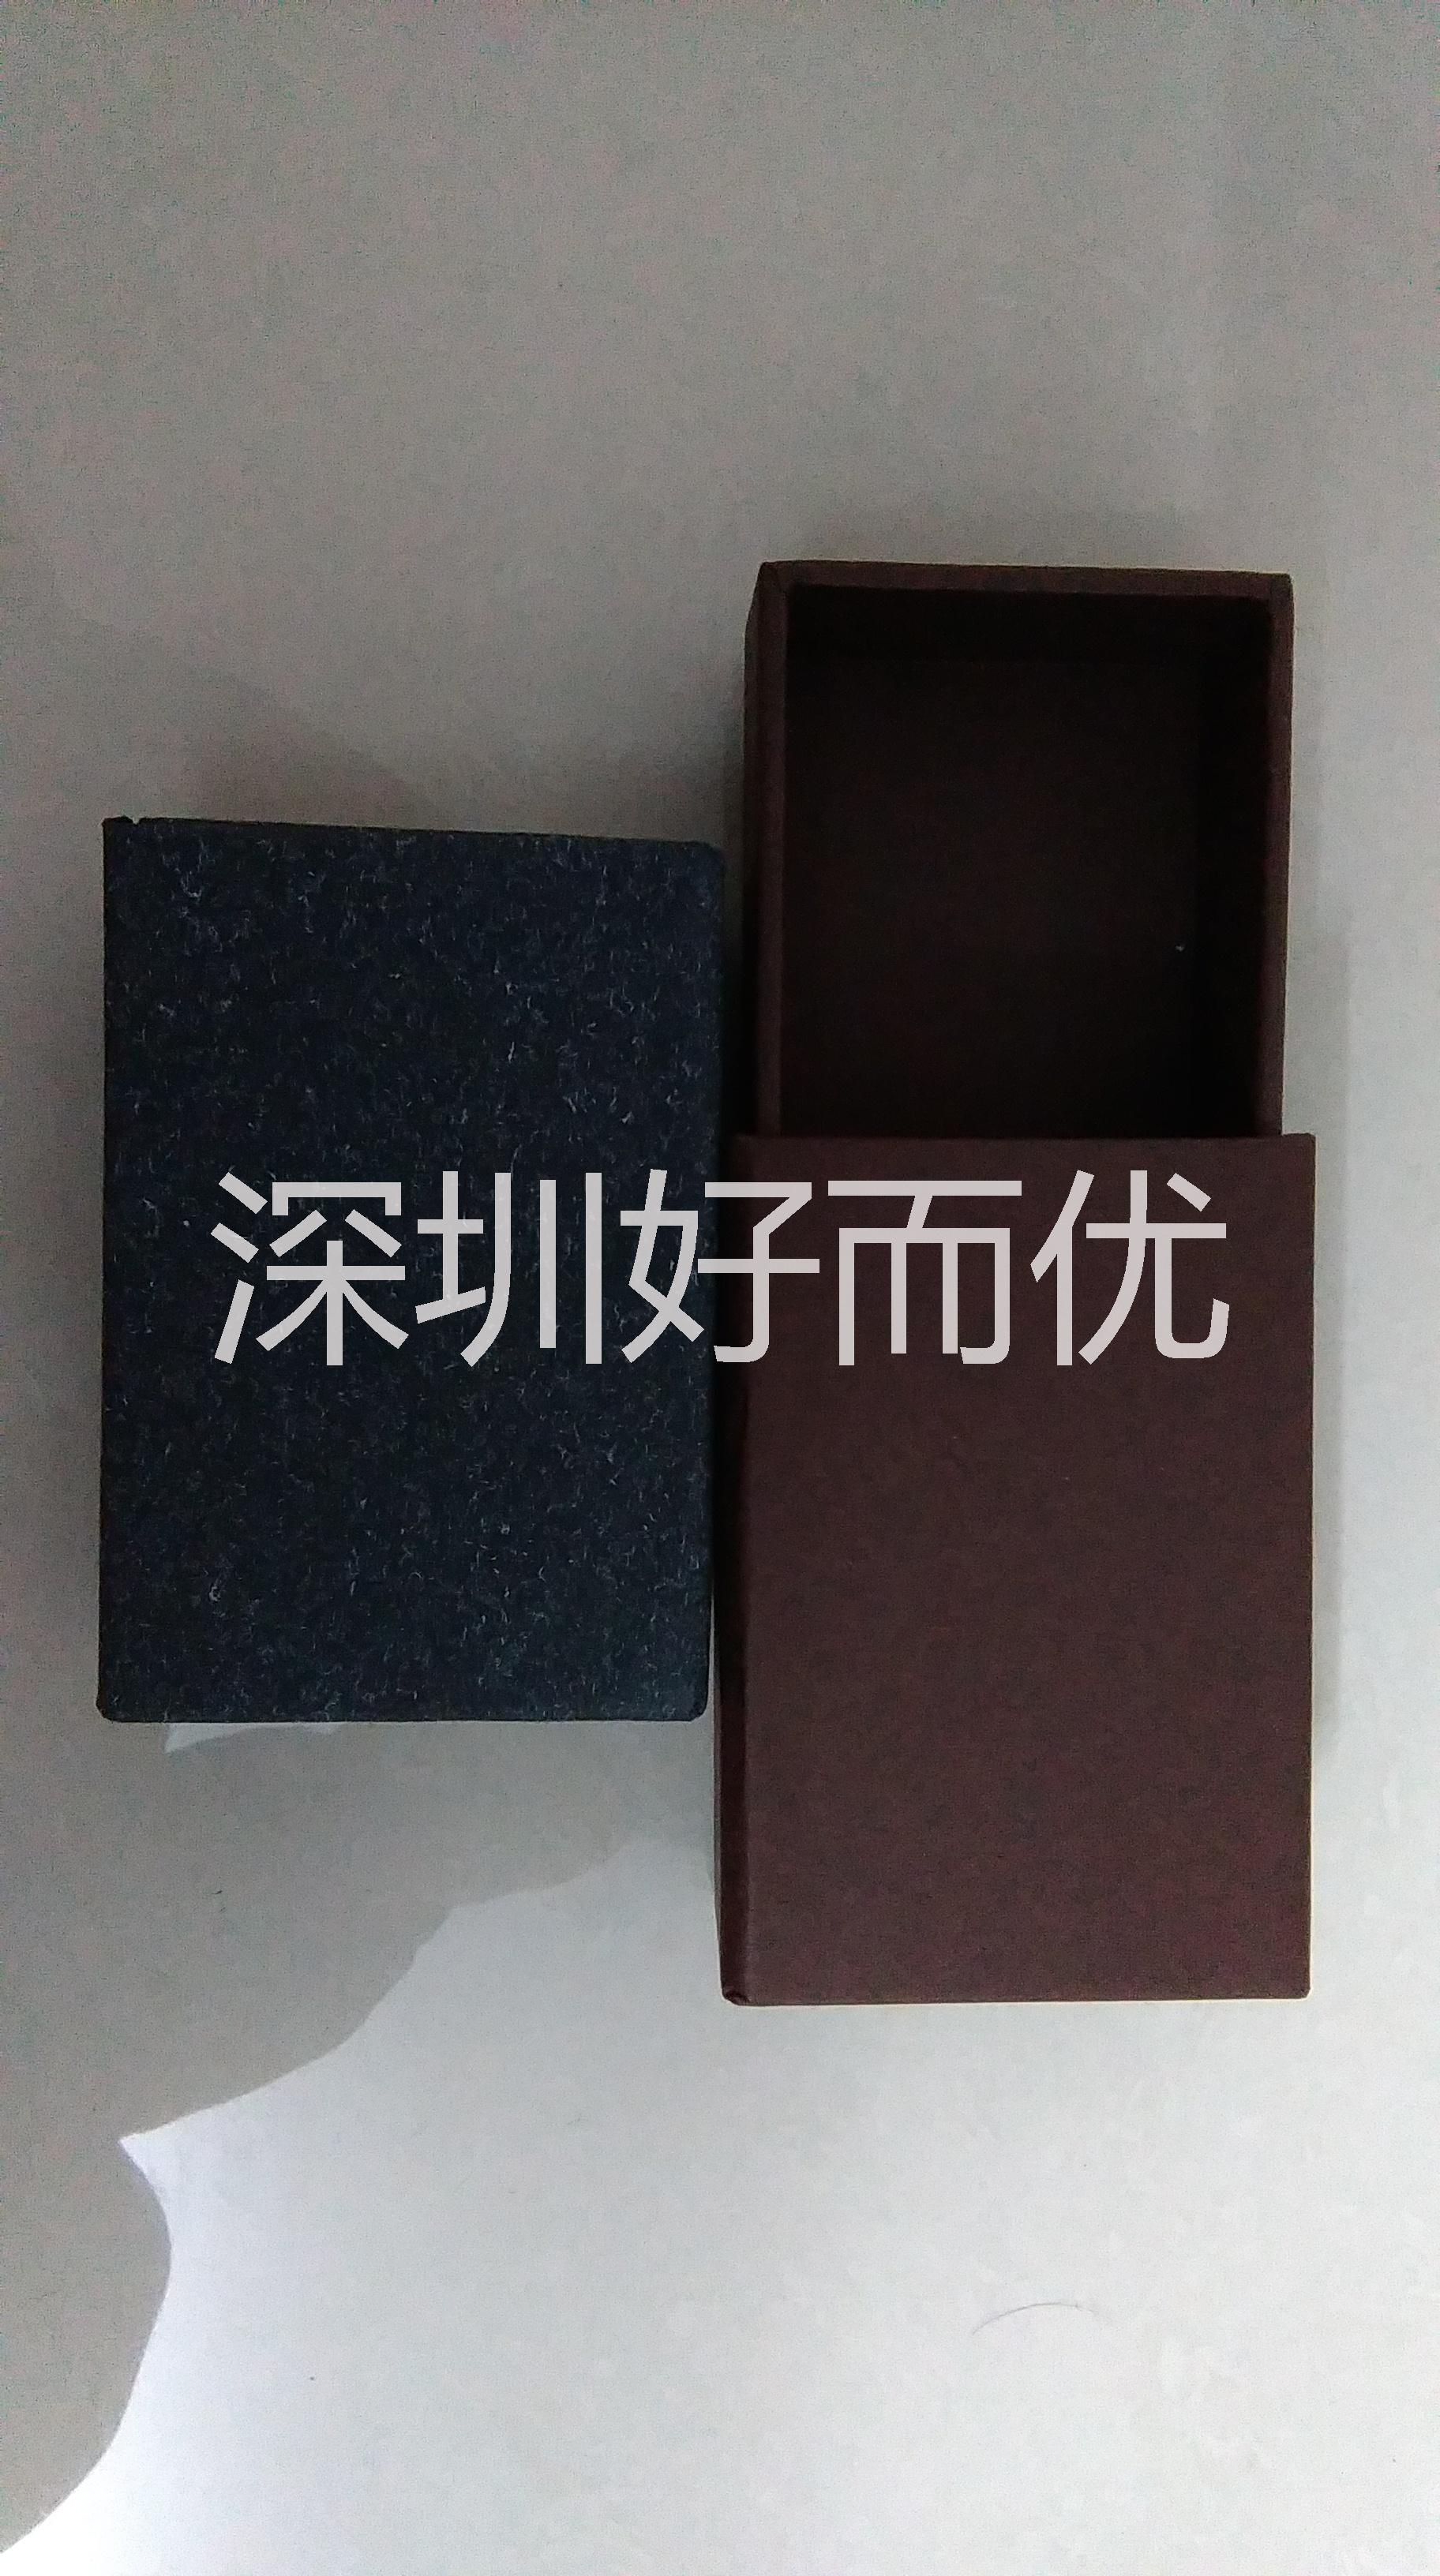 包装礼品盒生产订制  深圳印刷包装礼品盒定制厂家 黑色翻盖礼品盒